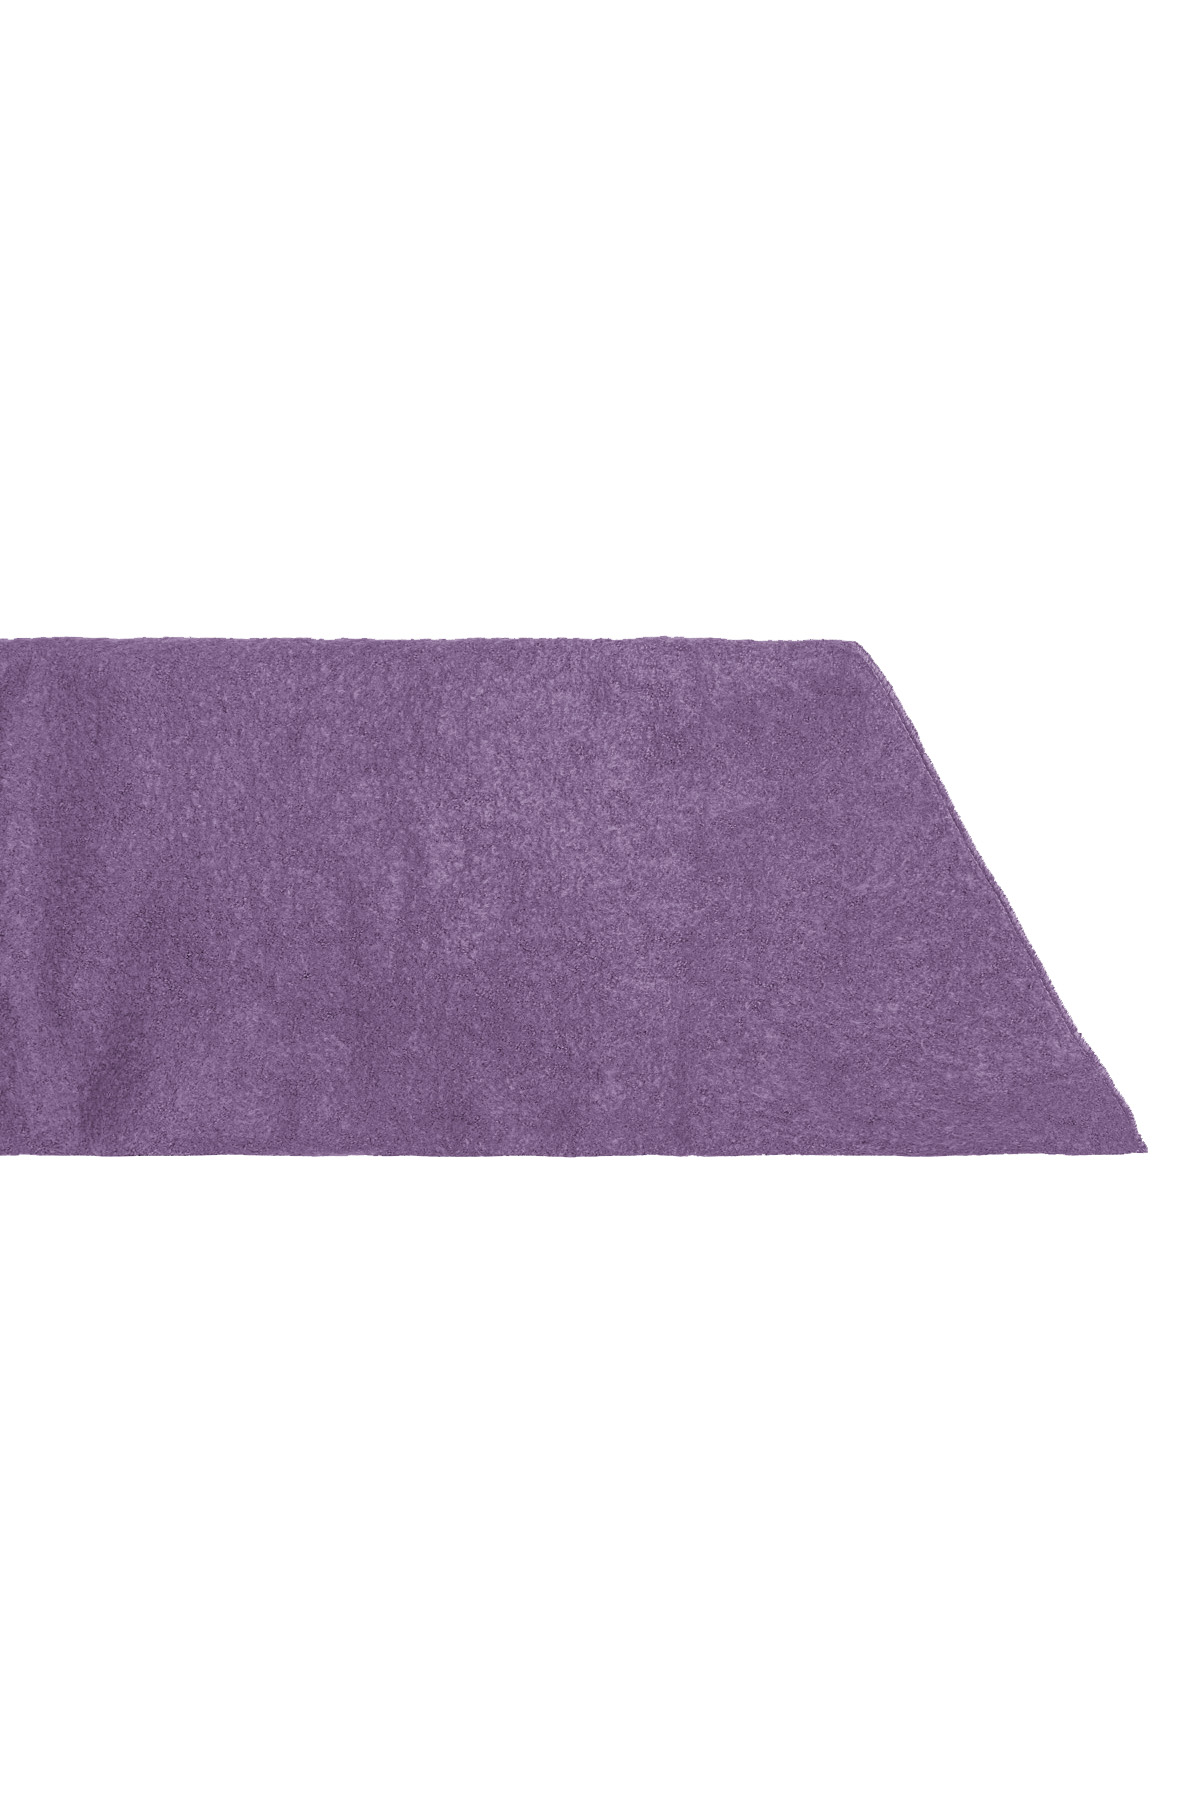 Single-colored winter scarf - purple Picture5